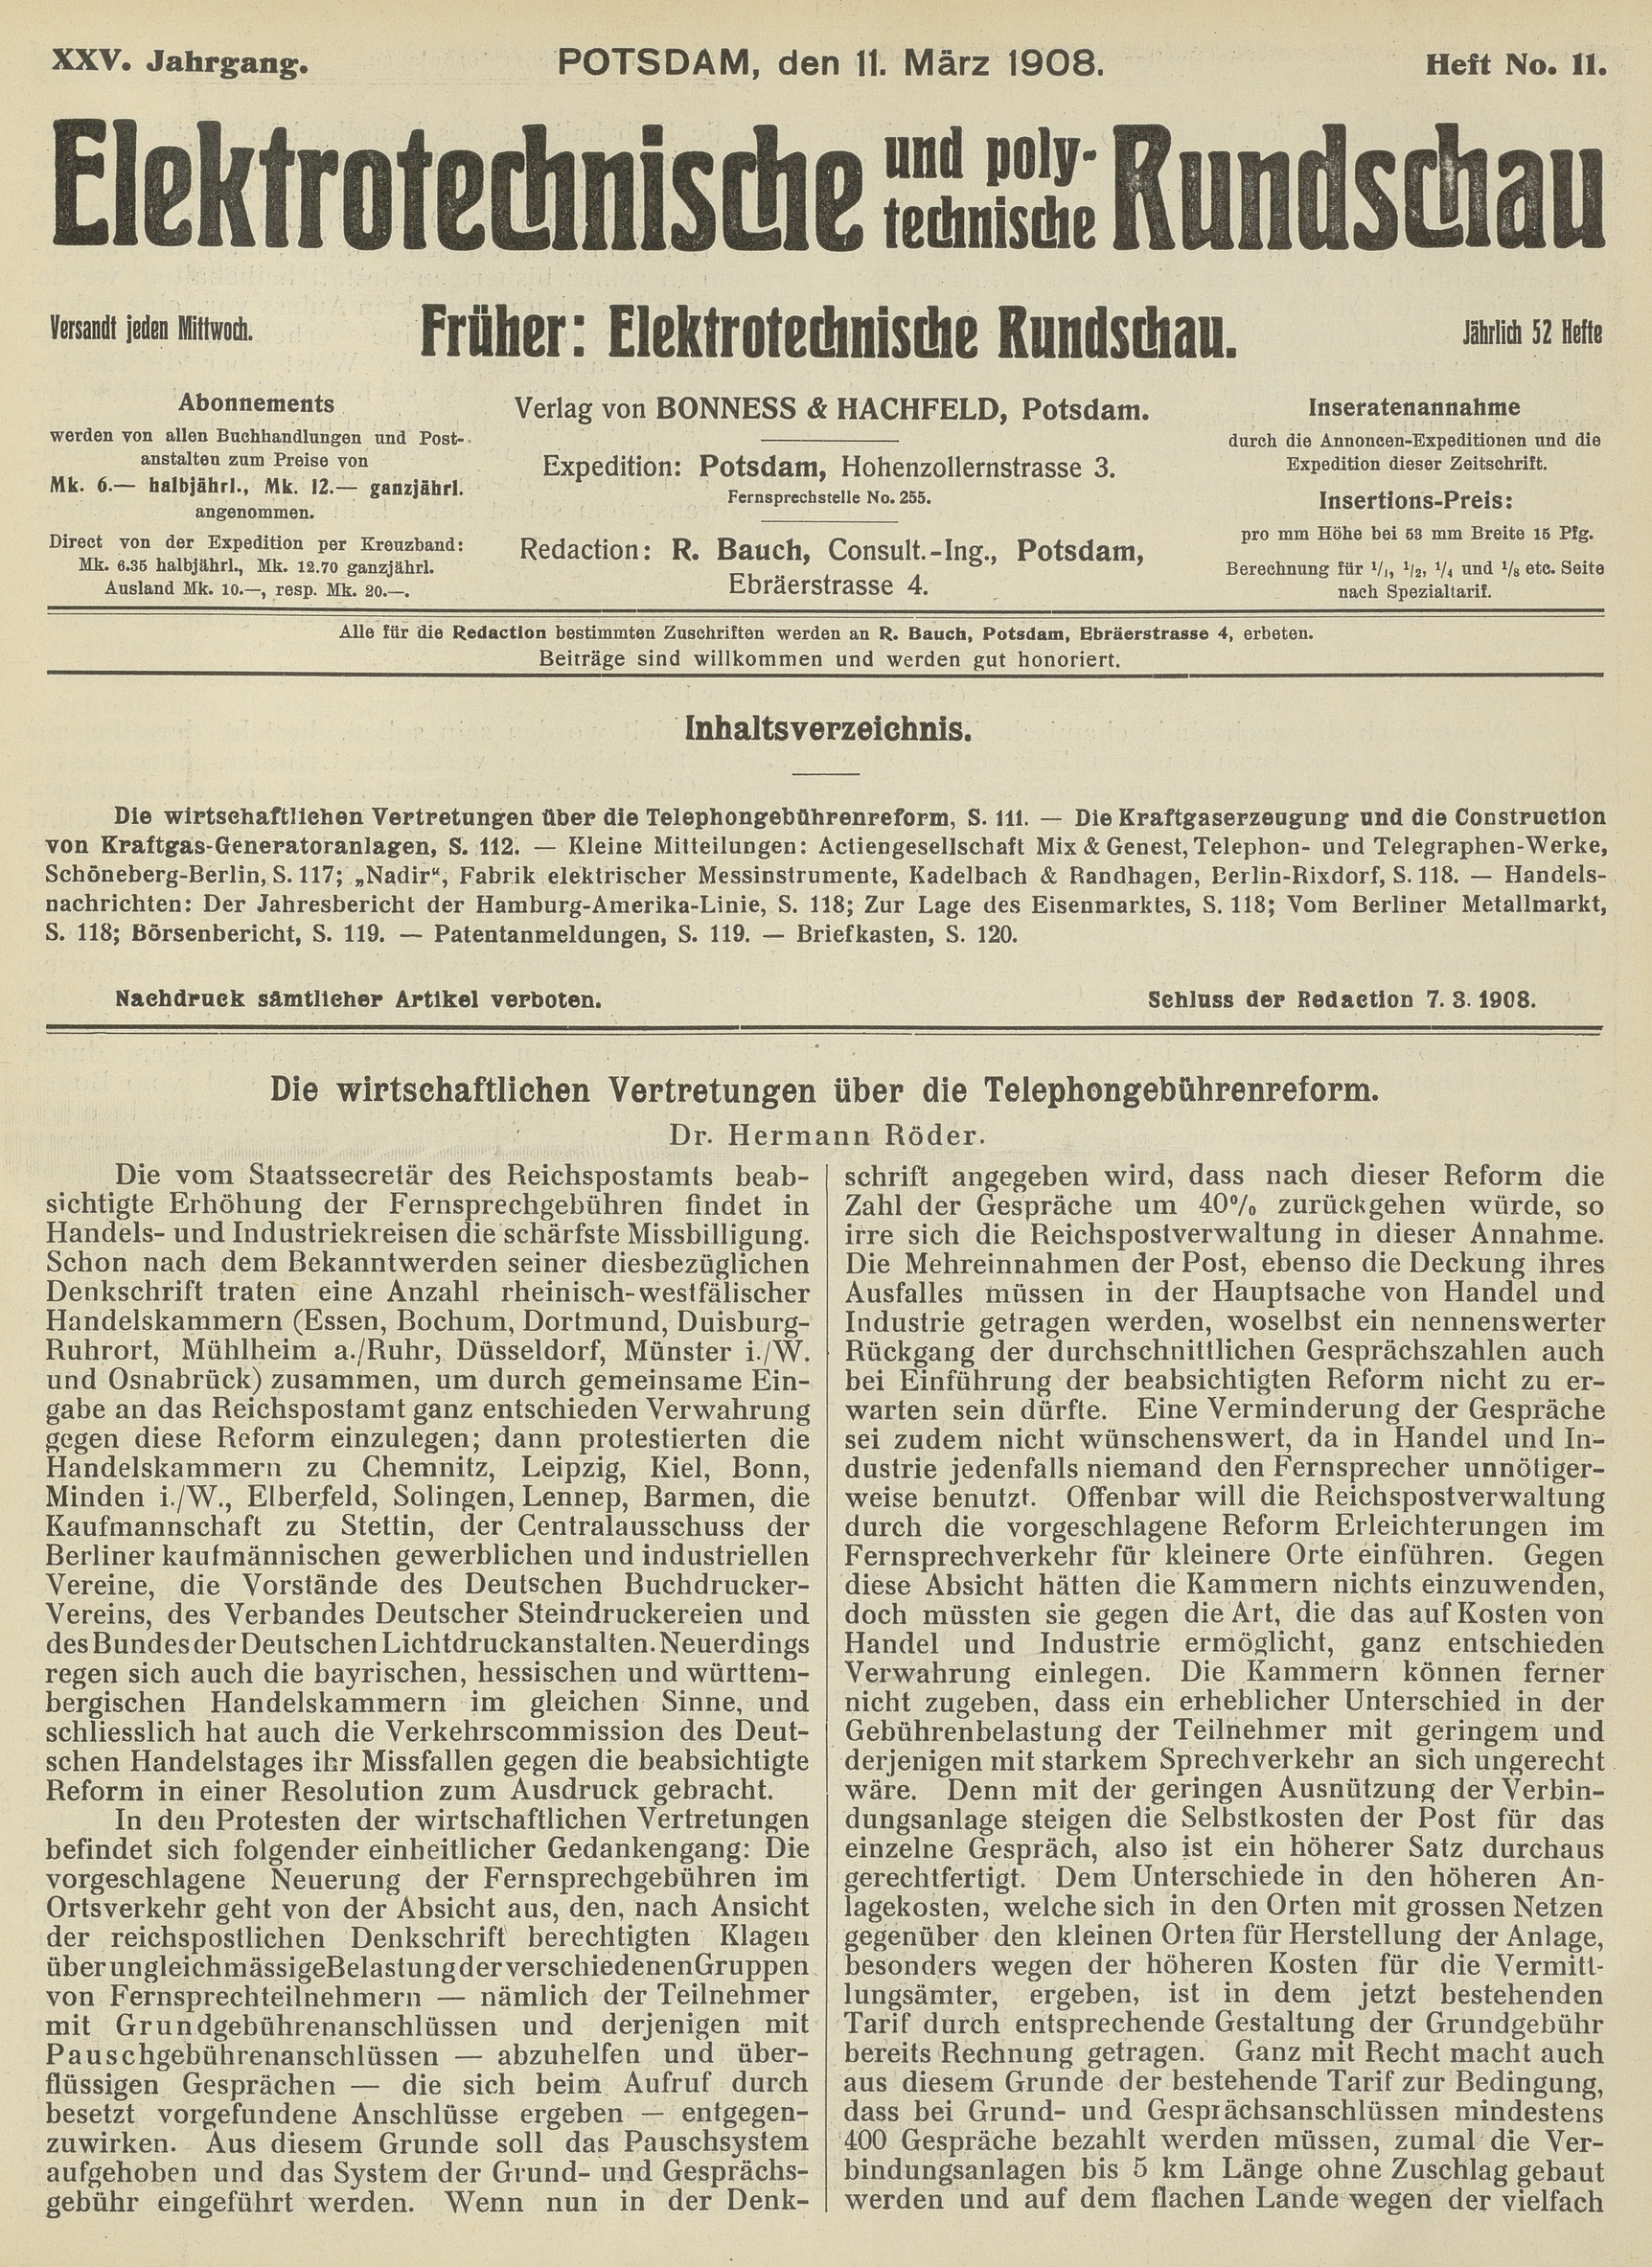 Elektrotechnische und polytechnische Rundschau, XXV. Jahrgang, Heft No. 11